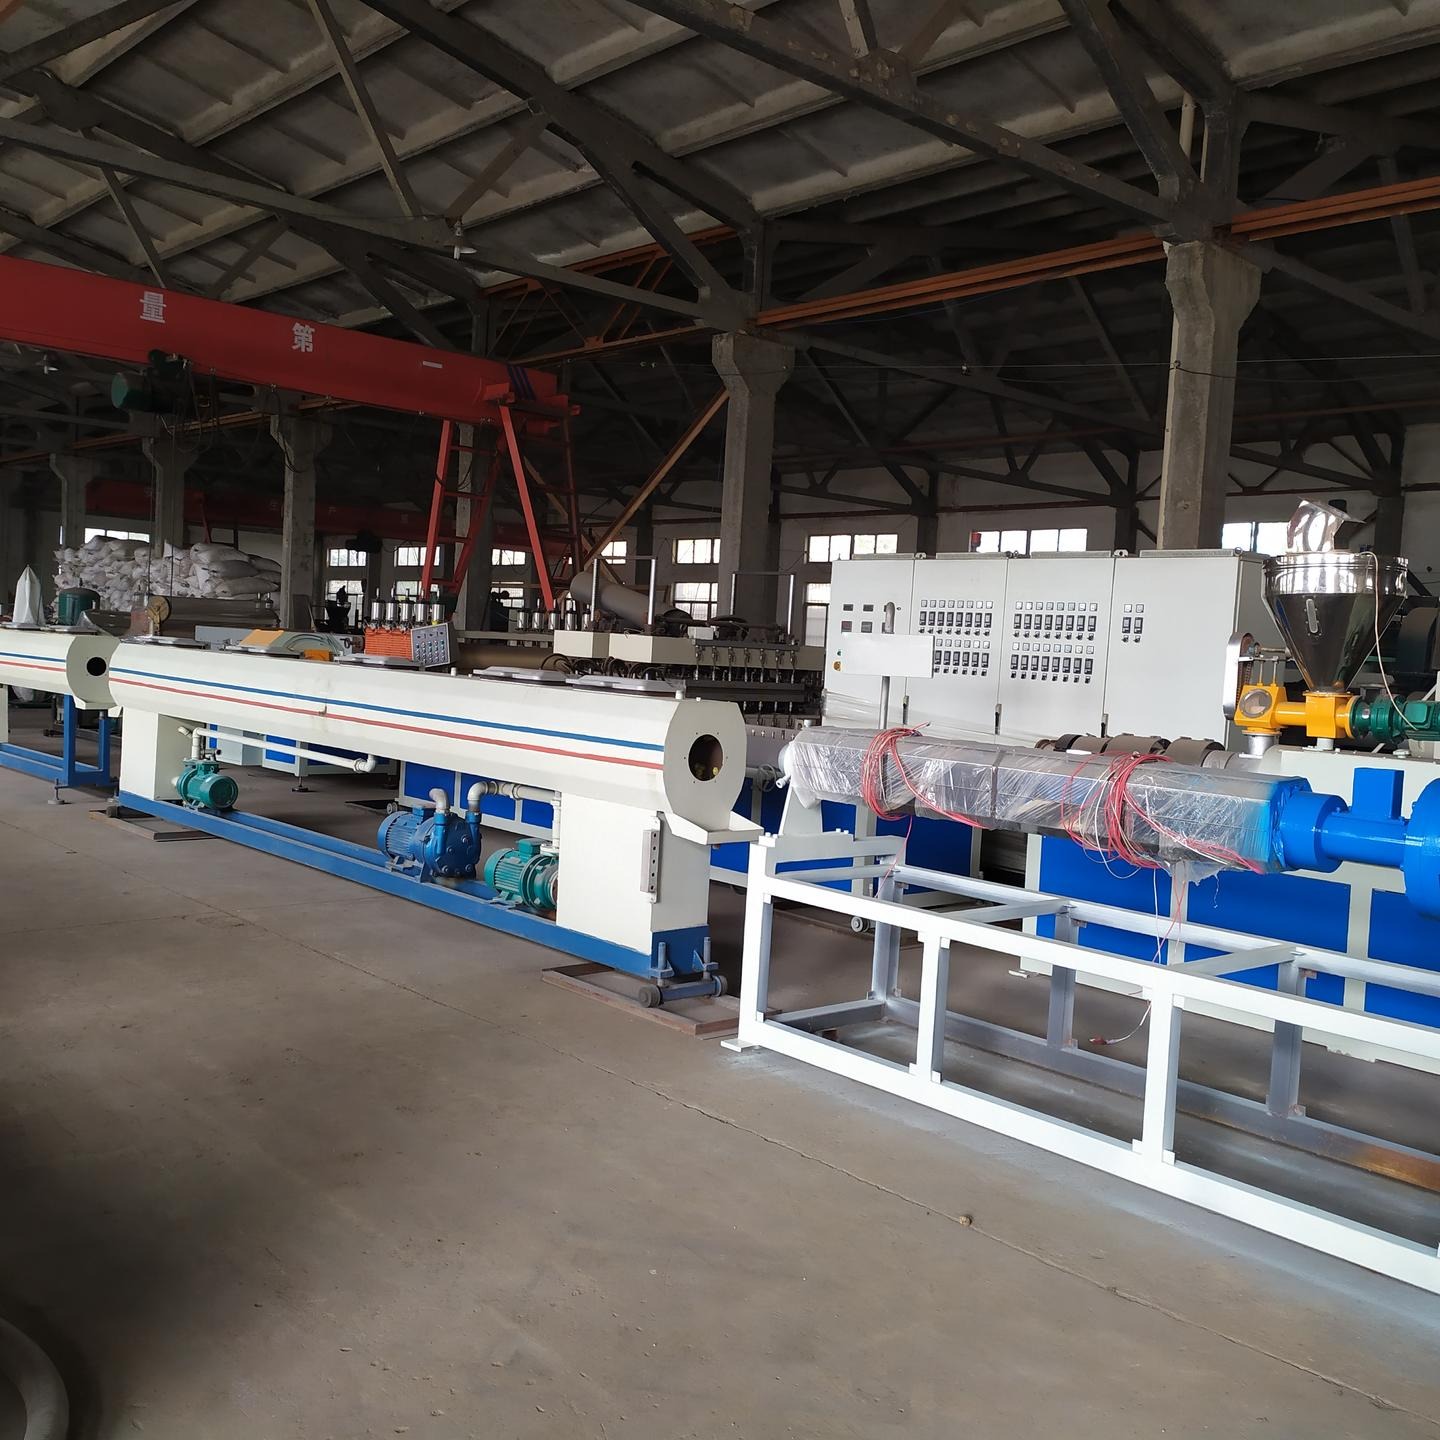 青岛超丰热销PVC管材挤出机械 塑料落水管设备 PVC穿线管生产线图片